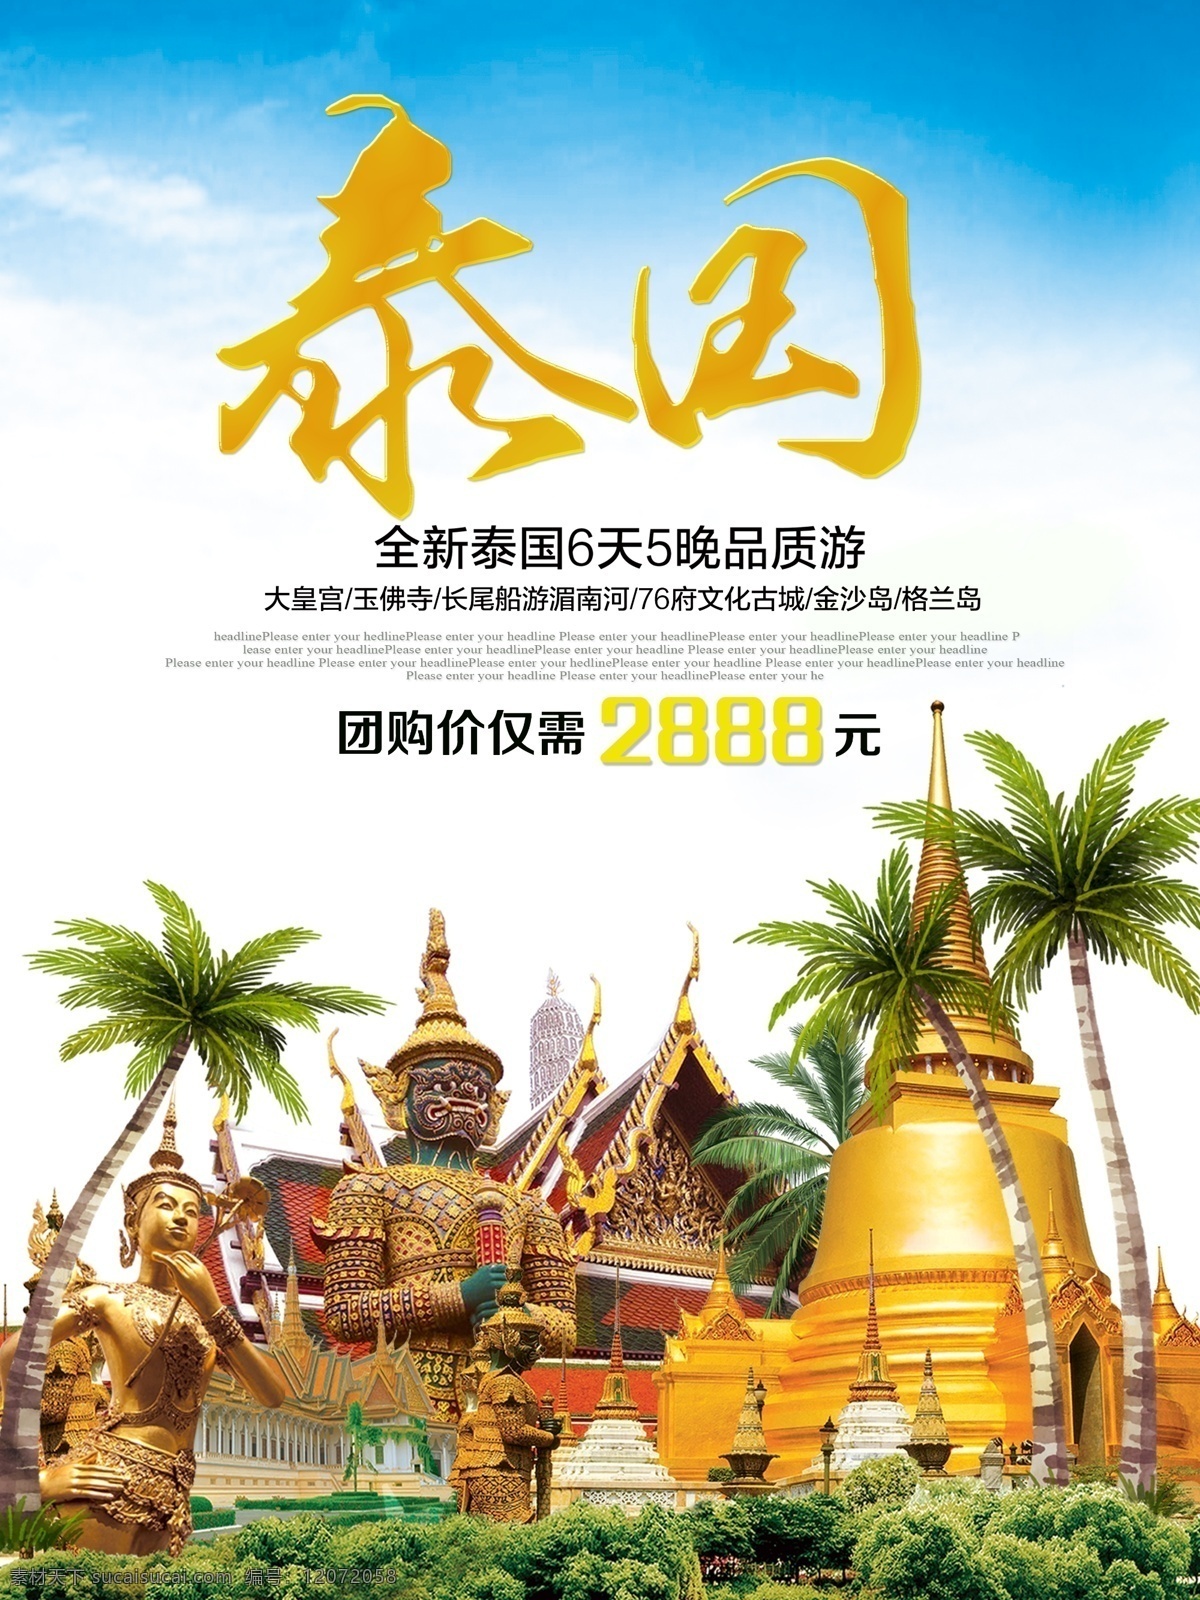 亚洲 泰国 著名 旅游景点 优惠 促销 海报 高清 全新 全国 旅游 景点 人妖 寺庙 美丽 自由行 团购